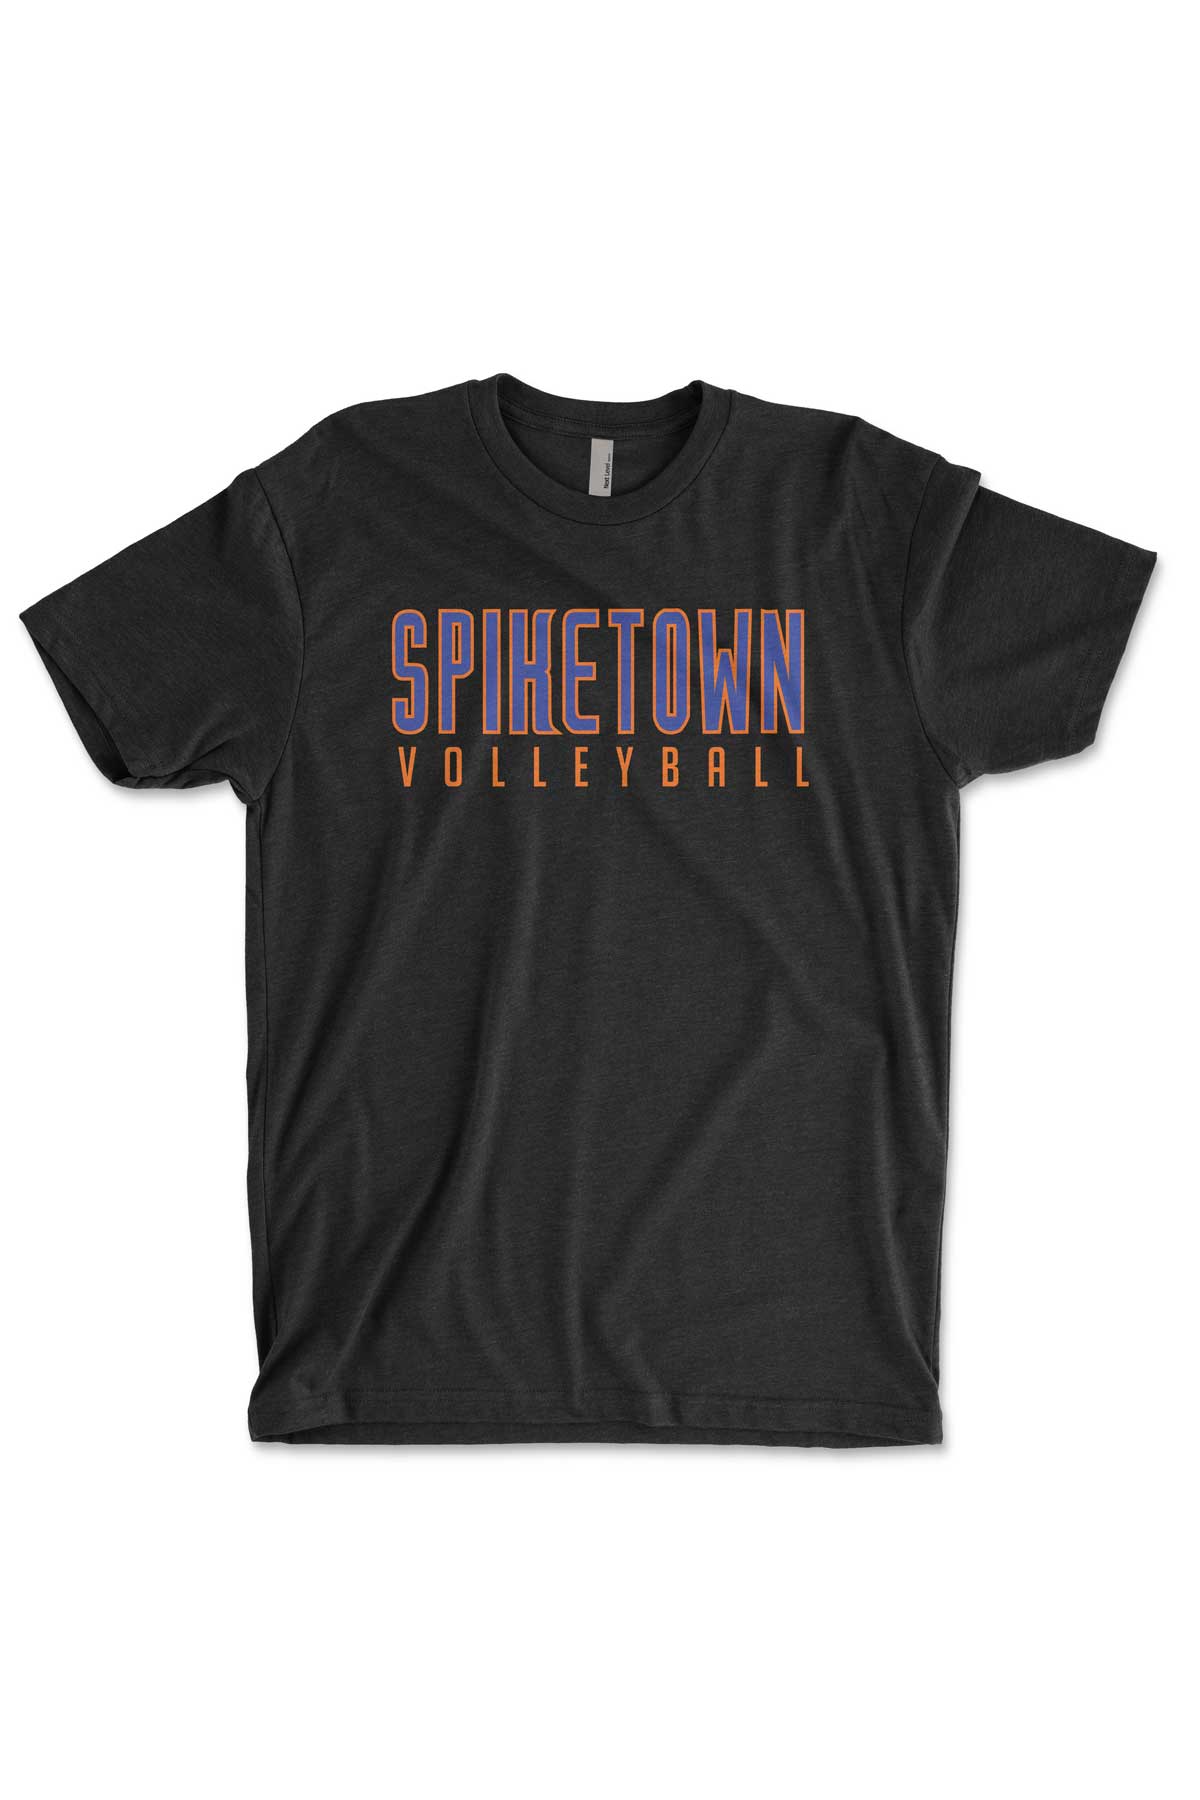 Spiketown Volleyball Premium T-Shirt